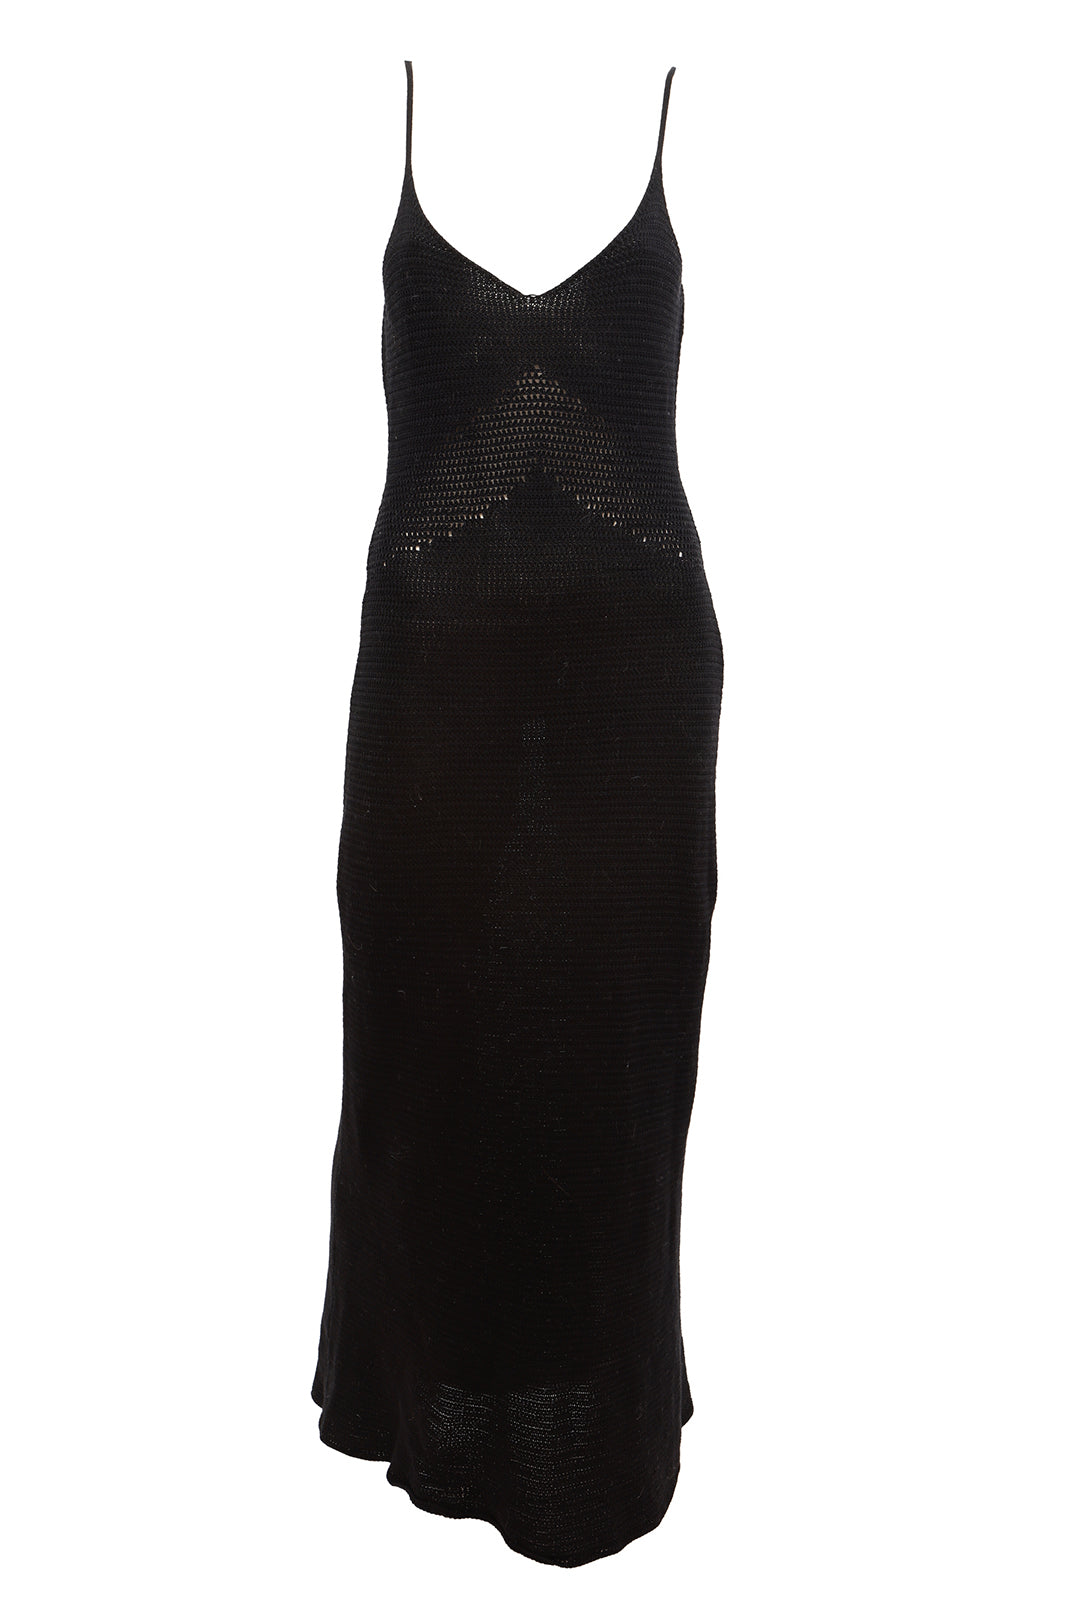 Μαύρο πλεκτό φόρεμα - Shades Of Black Knit Dress